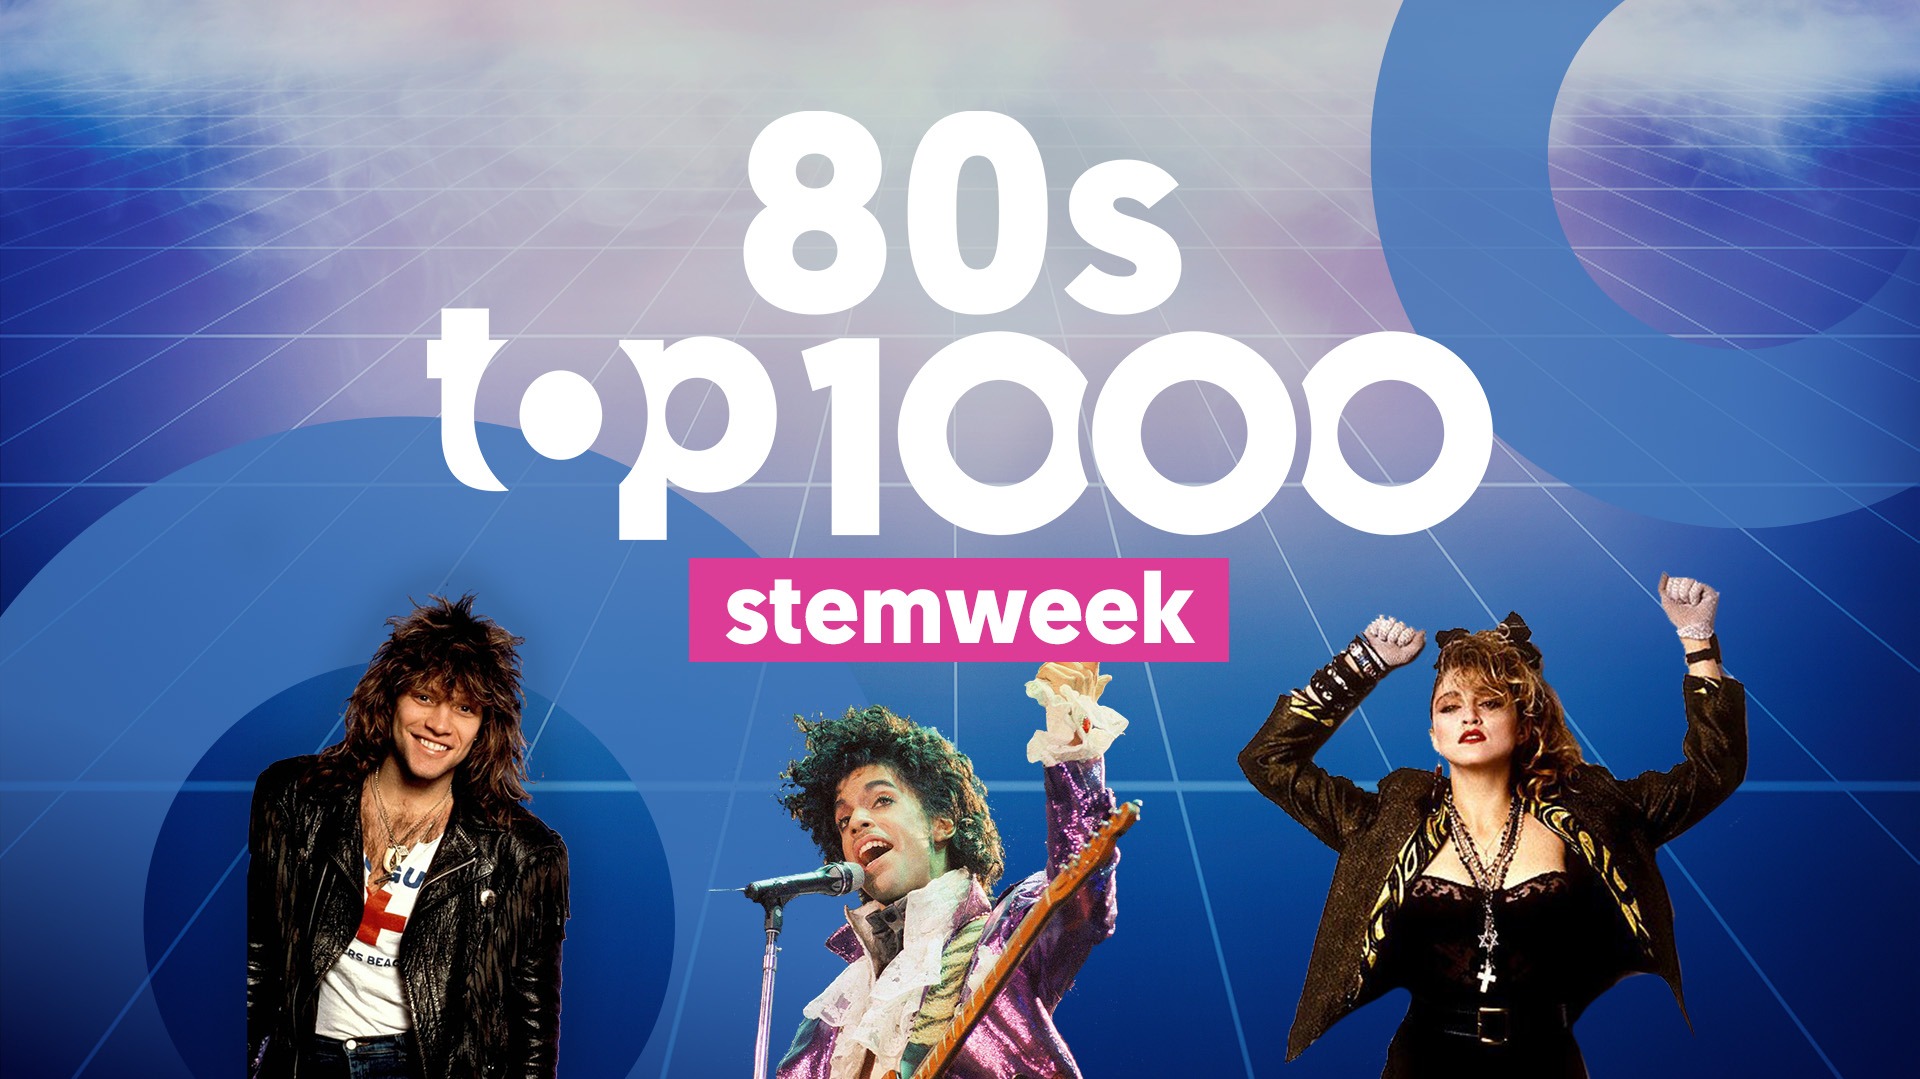 Joe 80s top 1000 stemweek